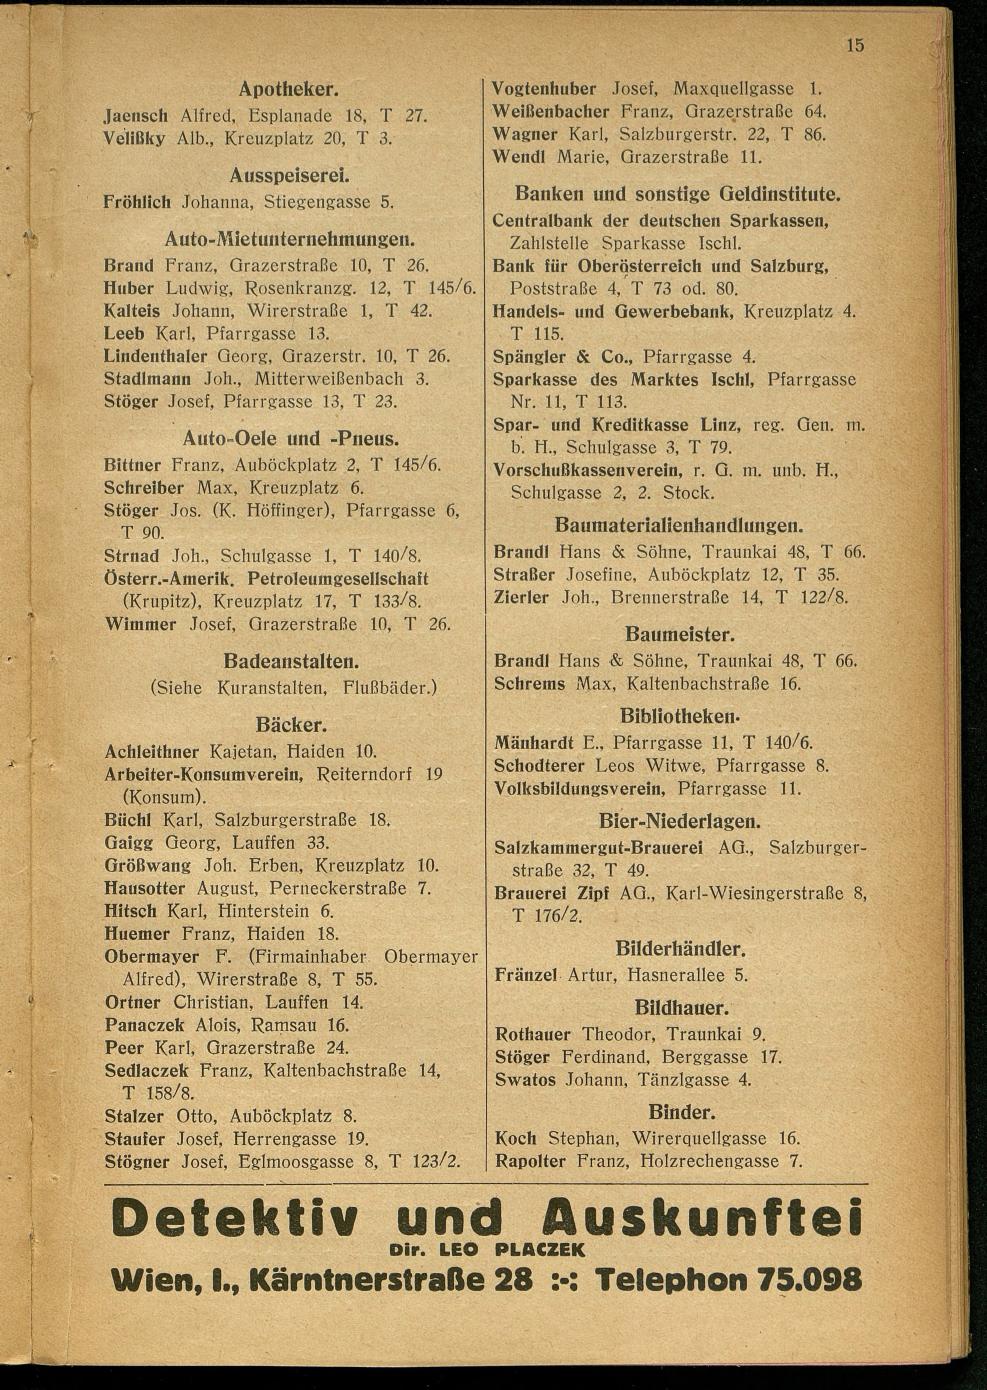 Handels- und Gewerbe-Adressbuch nebst Häuser-Verzeichnis der Kurortsgemeinde Bad Ischl 1925 - Seite 19